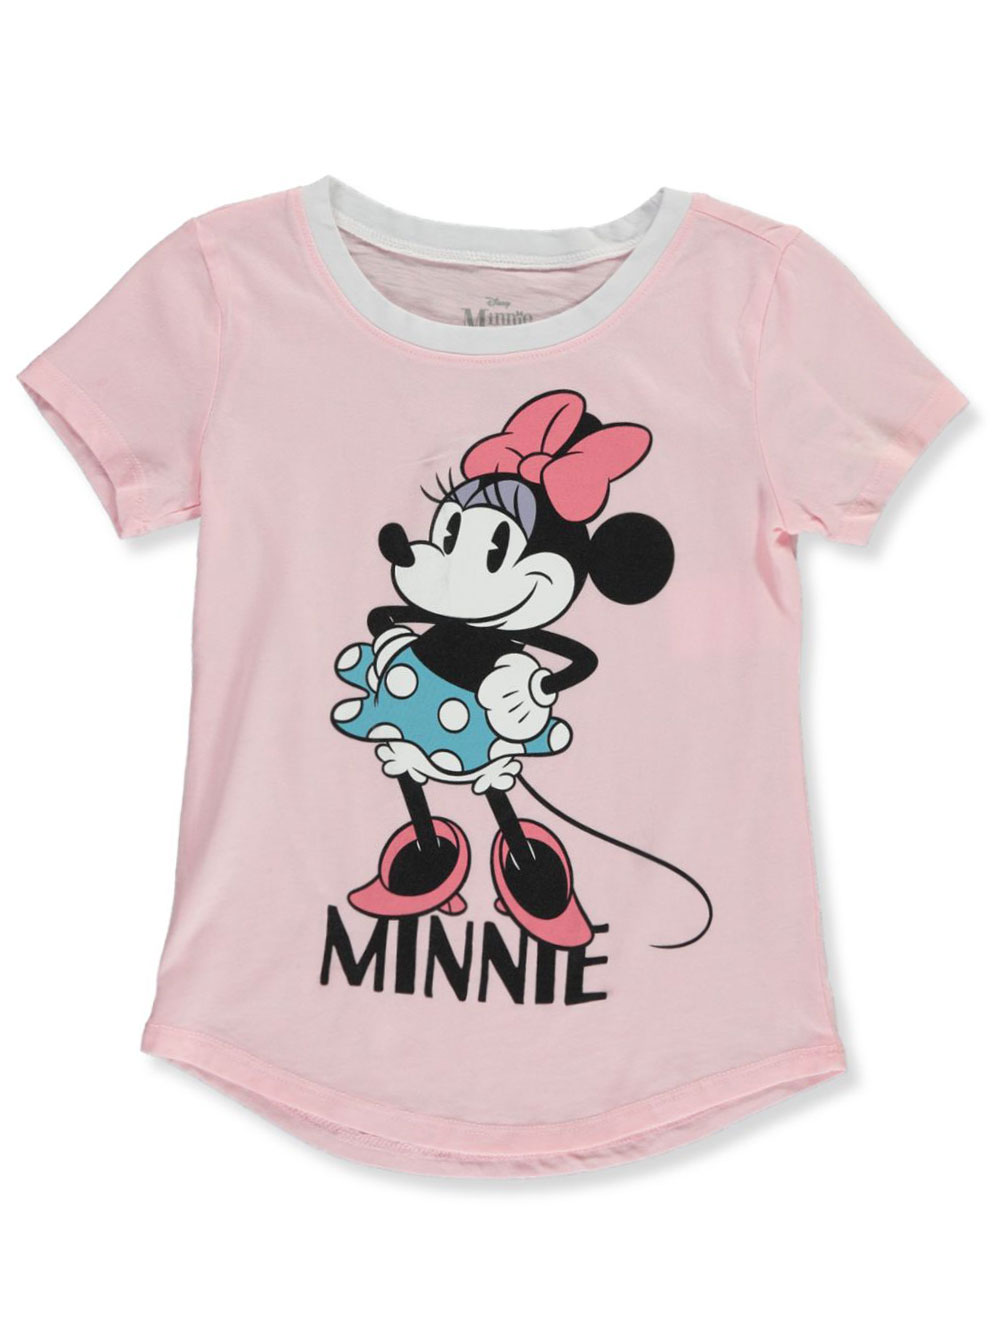 vintage minnie mouse shirt